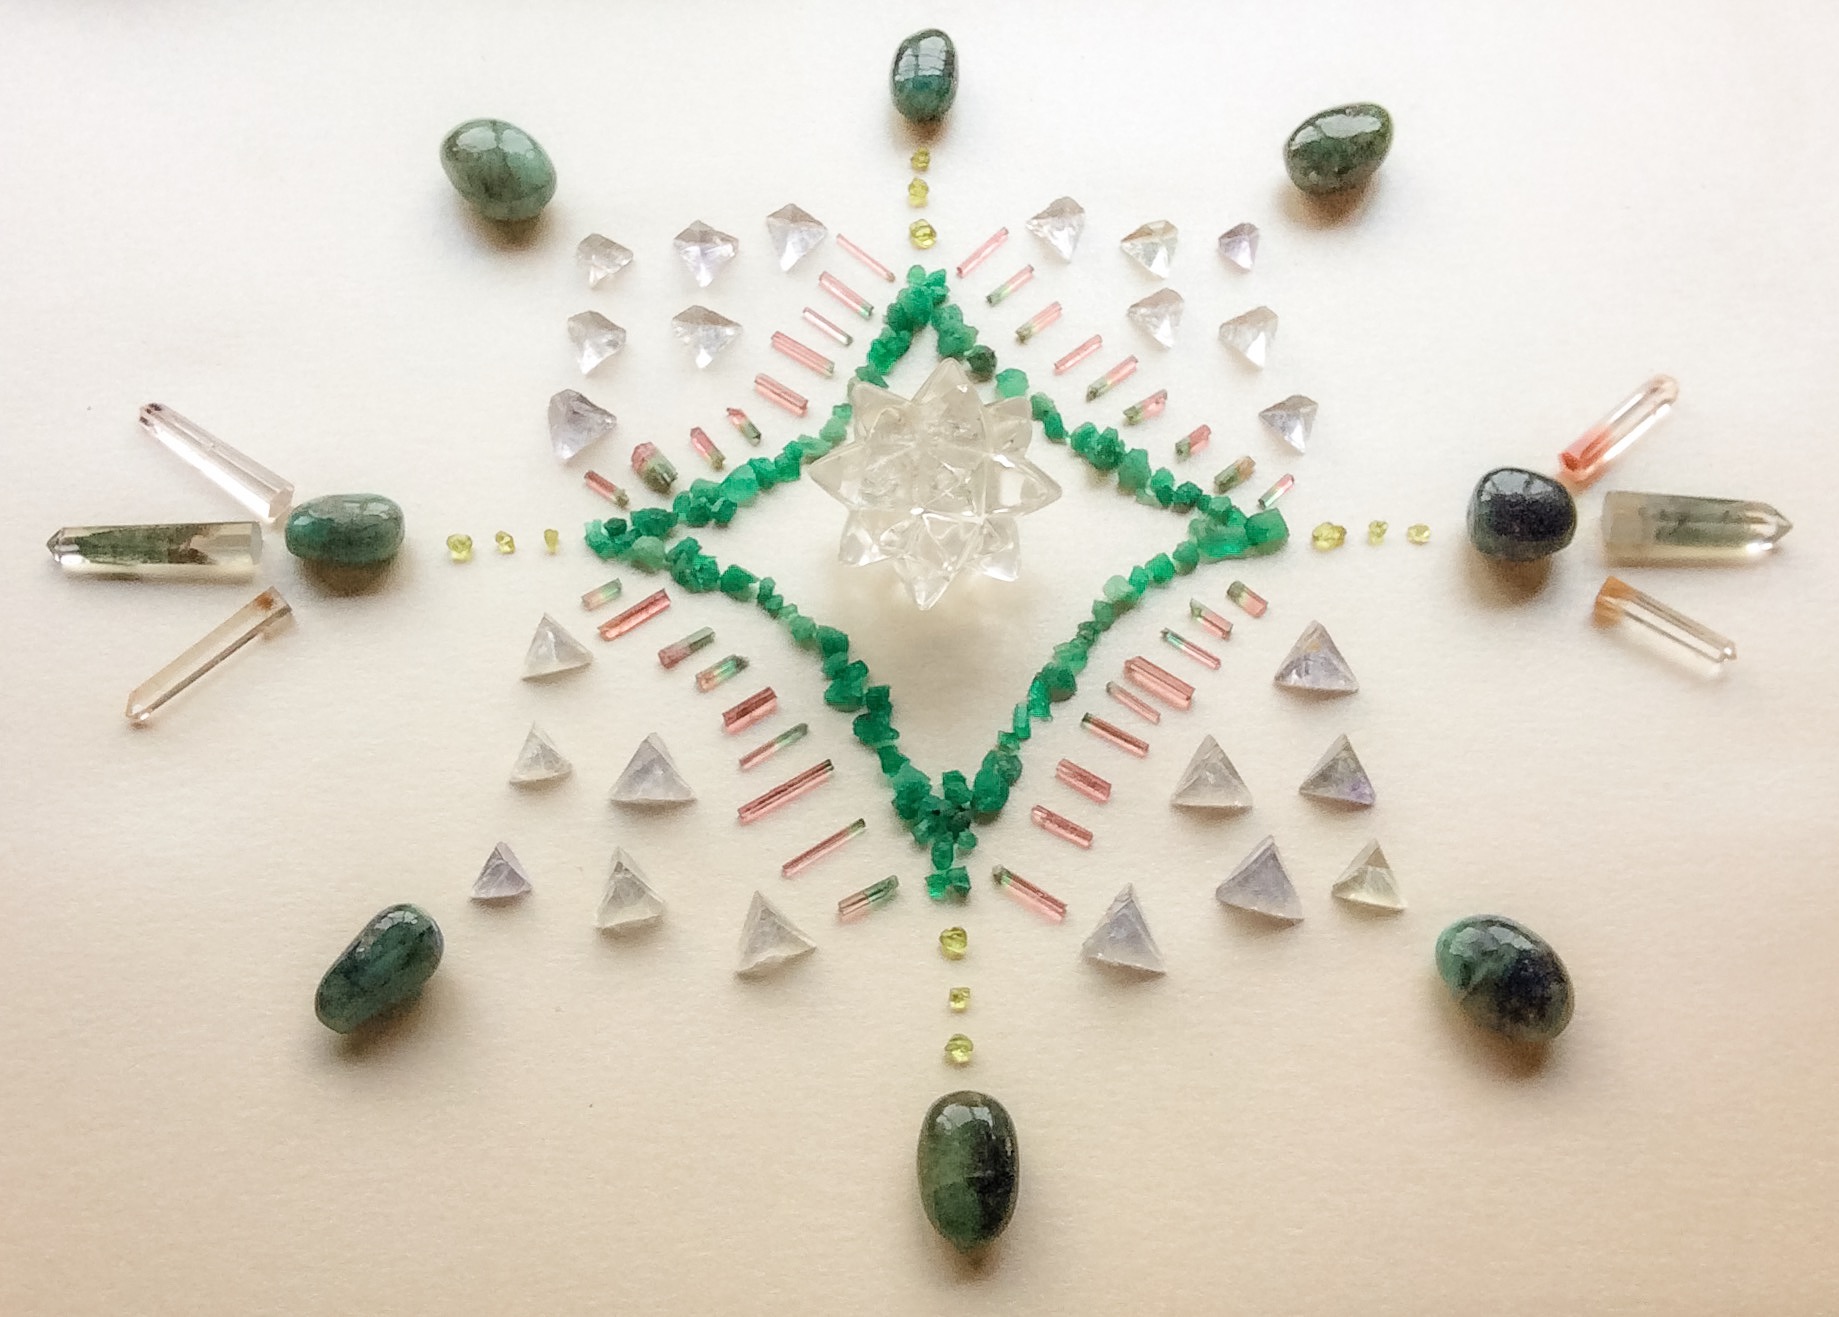 Moravian Star Quartz, Emerald, Bi-color Tourmaline, Peridot, Fluorite and Inclusion Quartz